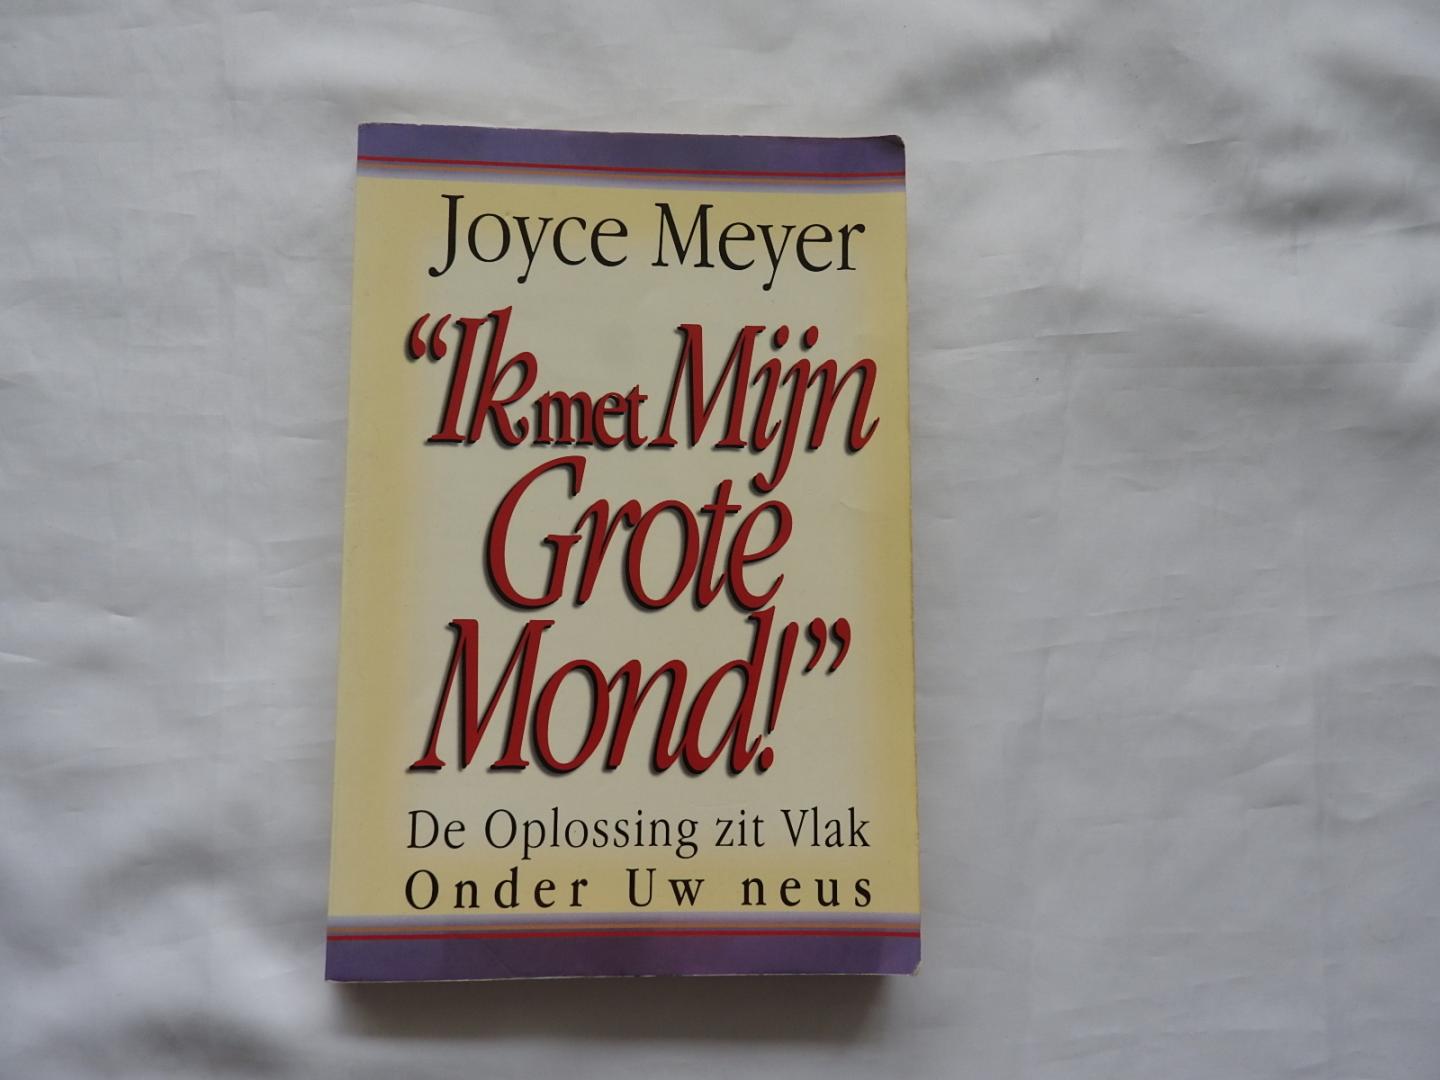 Meyer, Joyce - "Ik met Mijn Grote Mond !" - De Oplossing zit Vlak Onder Uw neus